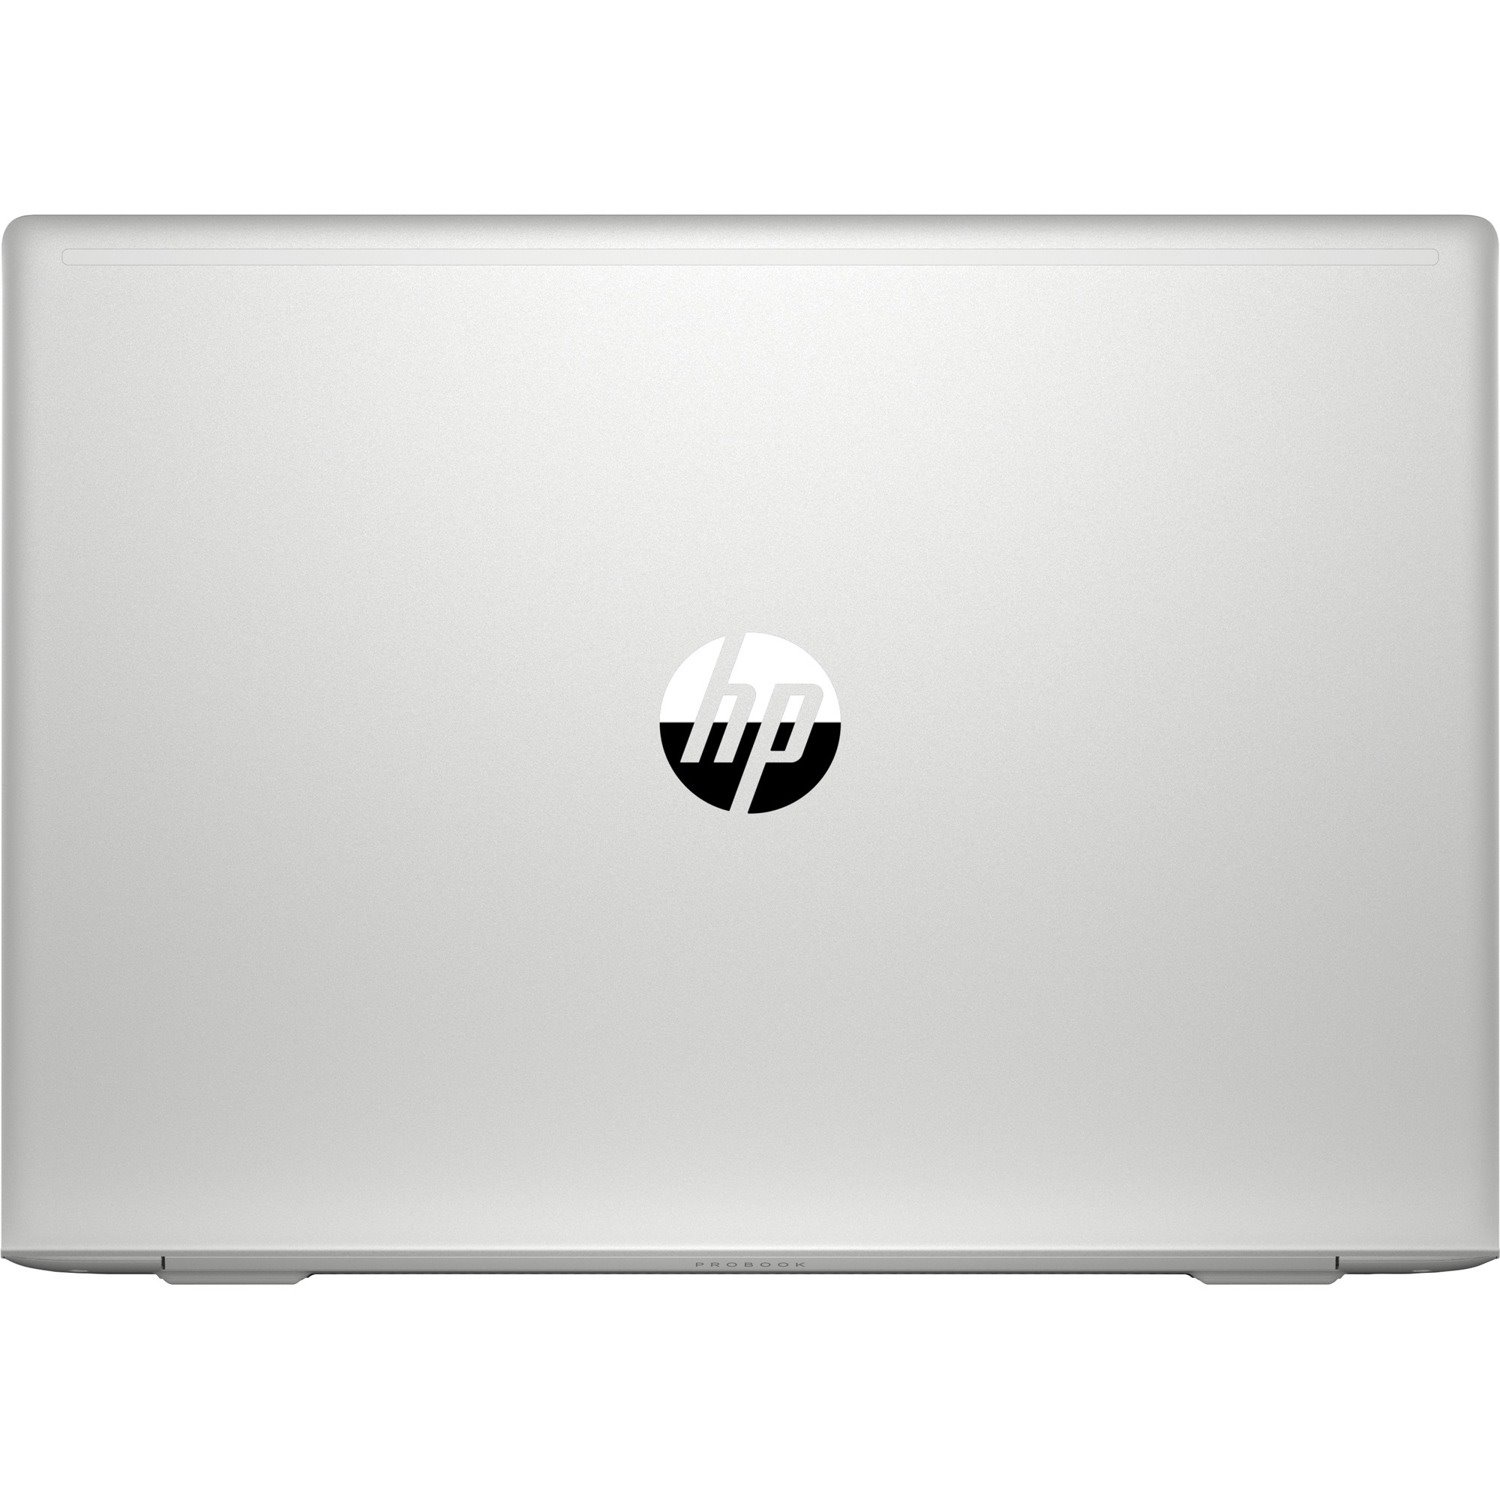 HP ProBook 450 G7 15.6" Notebook - Full HD - 1920 x 1080 - Intel Core i7 10th Gen i7-10510U Quad-core (4 Core) 1.80 GHz - 8 GB Total RAM - 256 GB SSD - Pike Silver